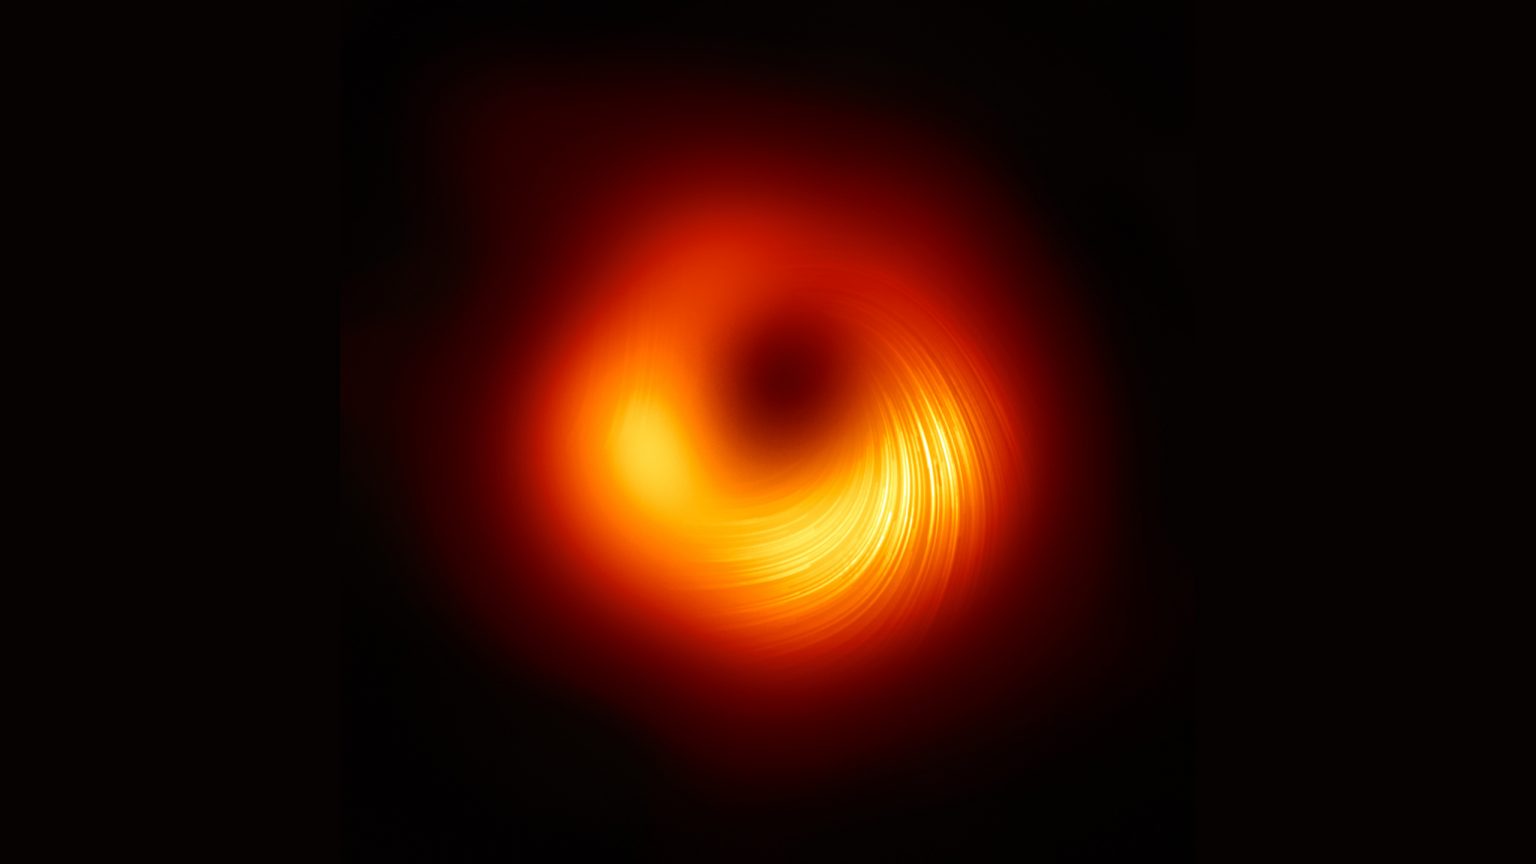 Астрофизики впервые запечатлели магнитное поле вокруг черной дыры